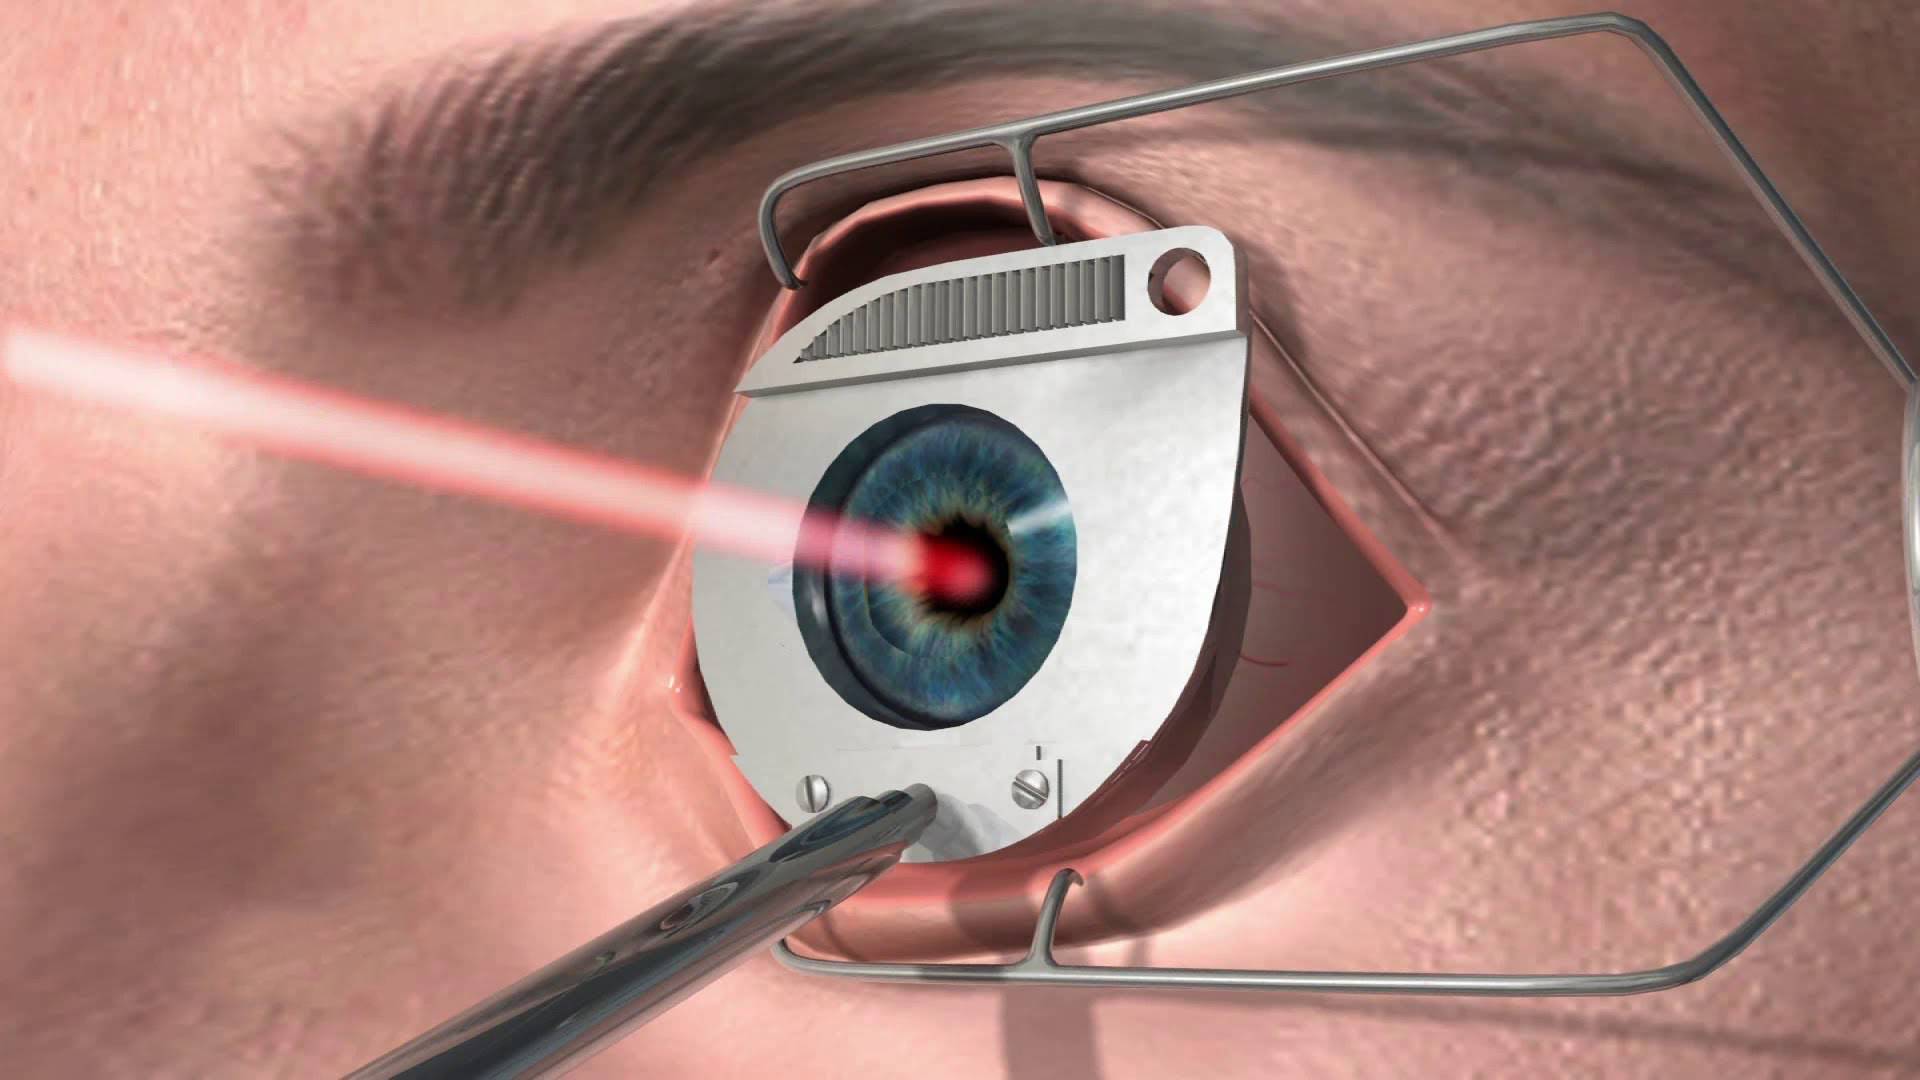 Какие могут возникнуть осложнения после операции по замене хрусталика глаза?